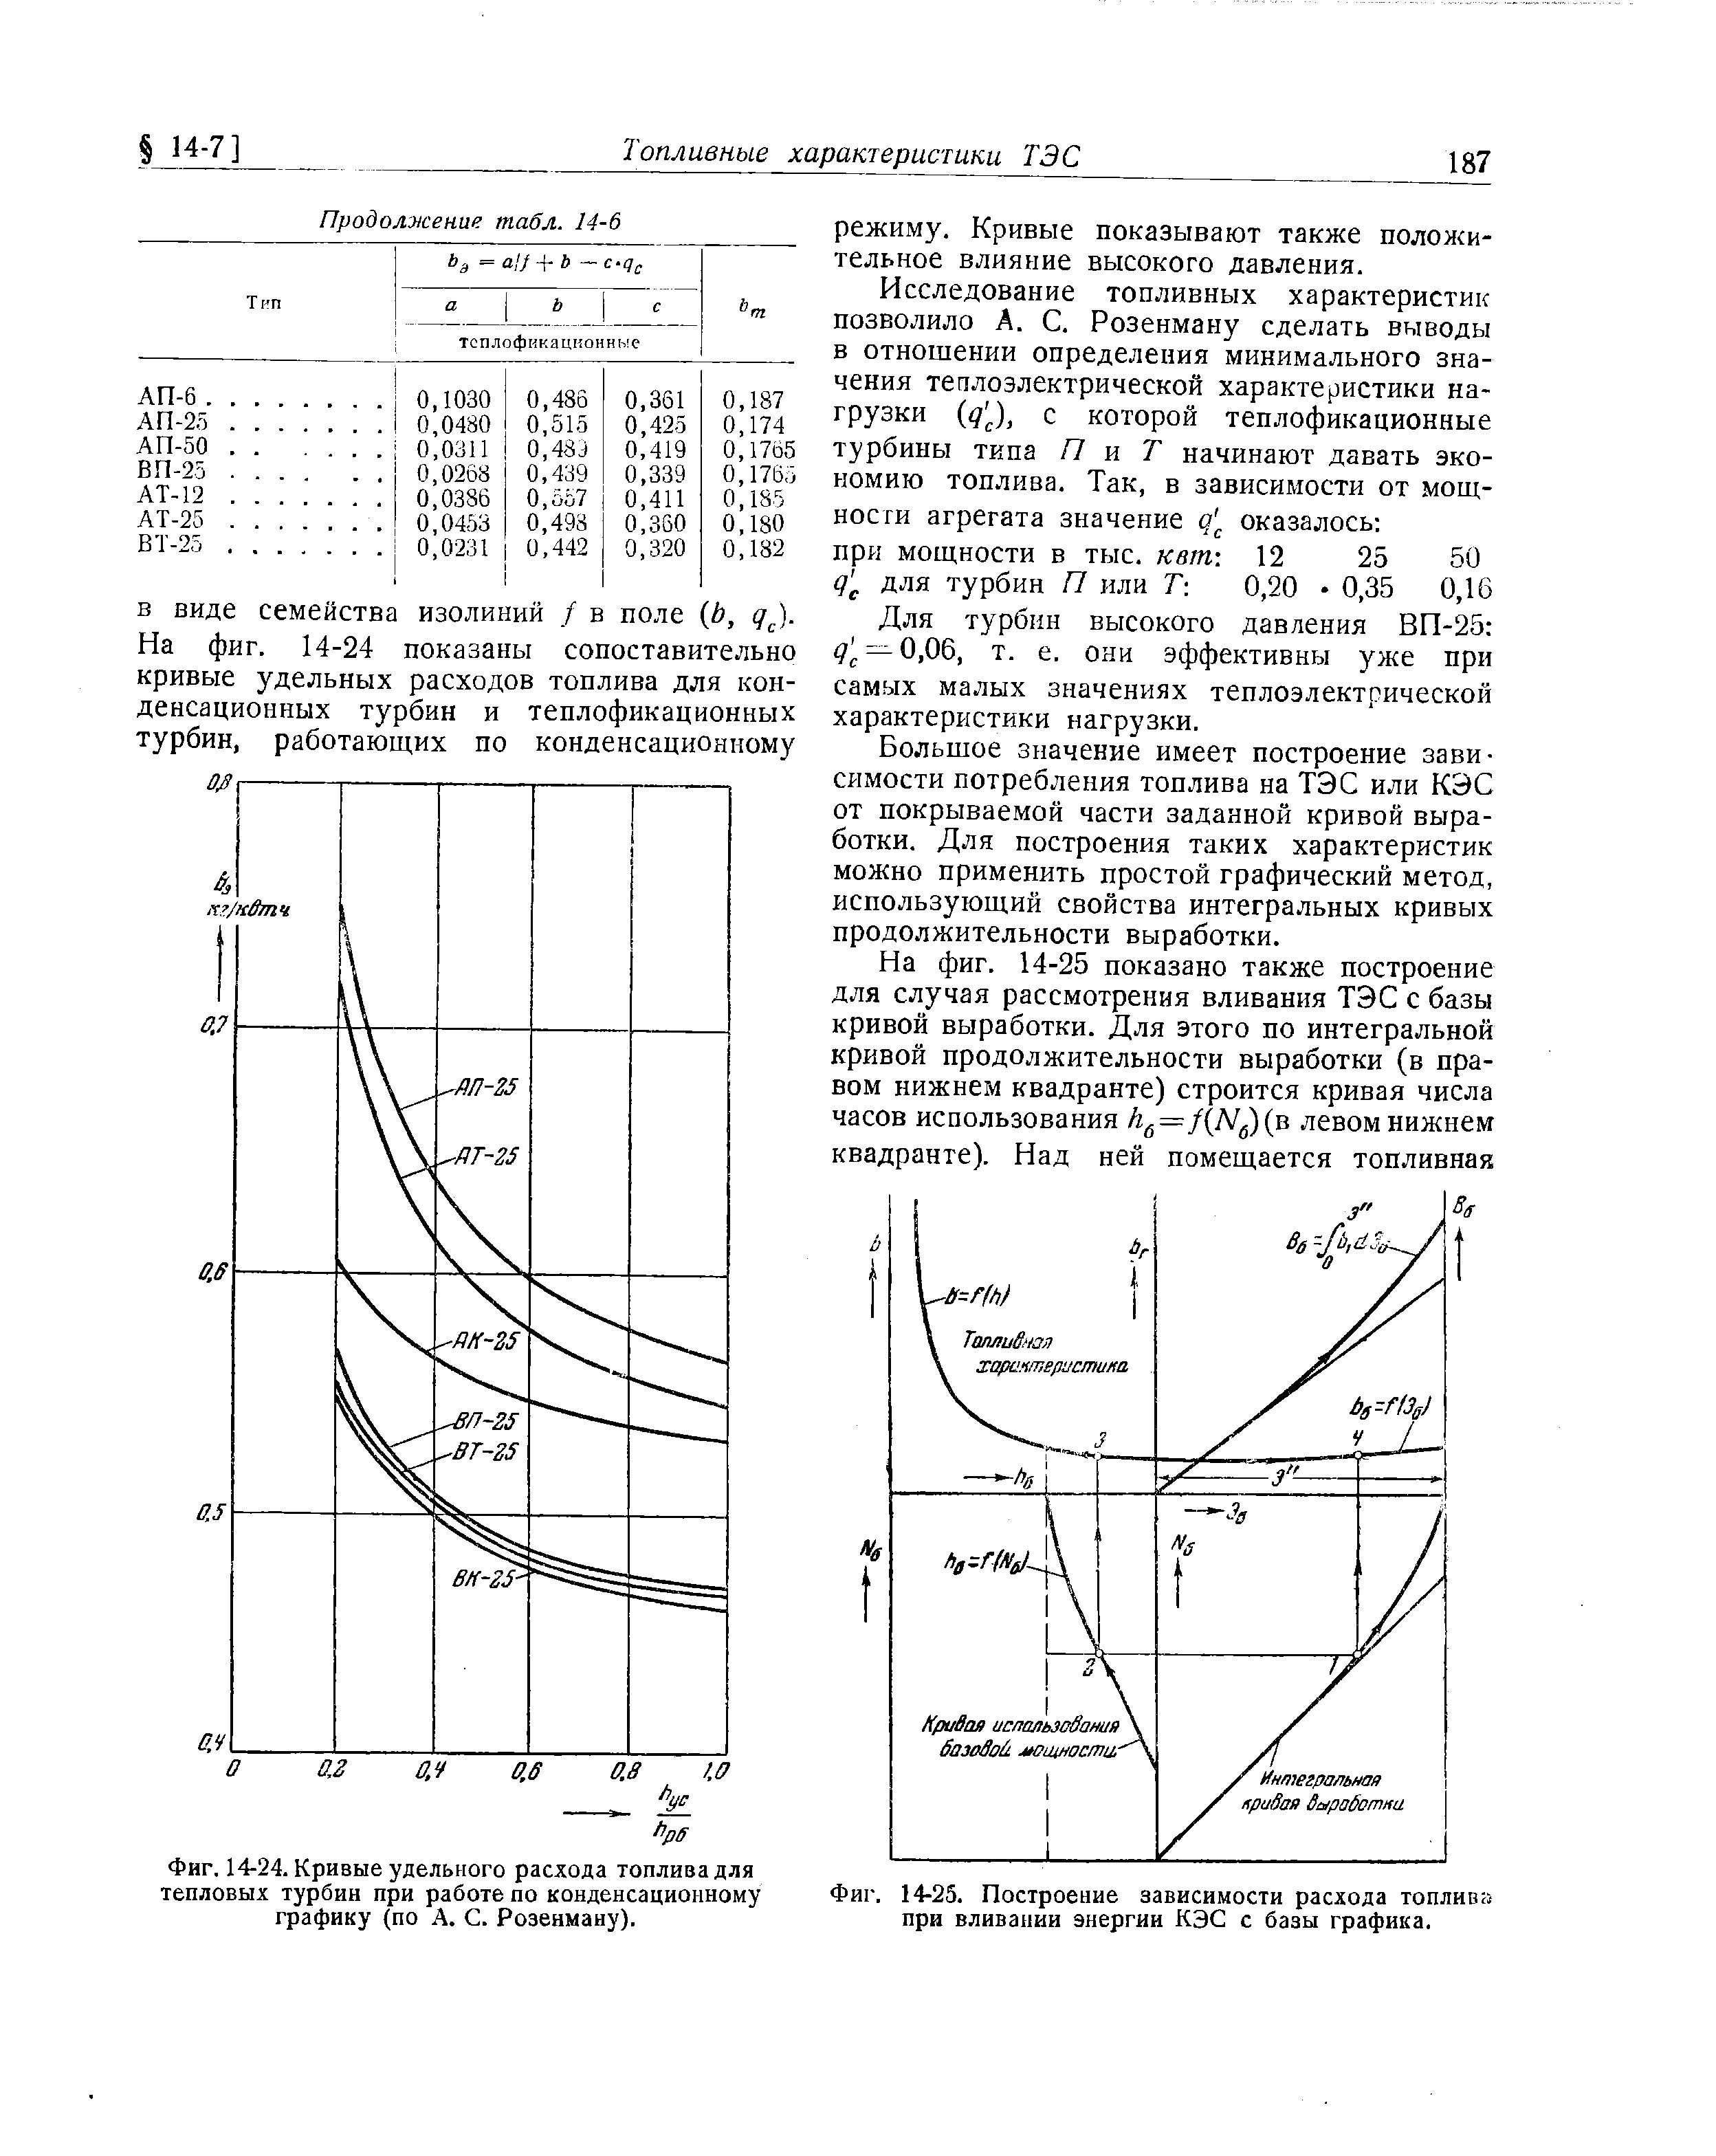 Фиг. 14-24. Кривые удельного расхода топлива для тепловых турбин при работе по конденсационному графику (по А. С. Розеиману).
